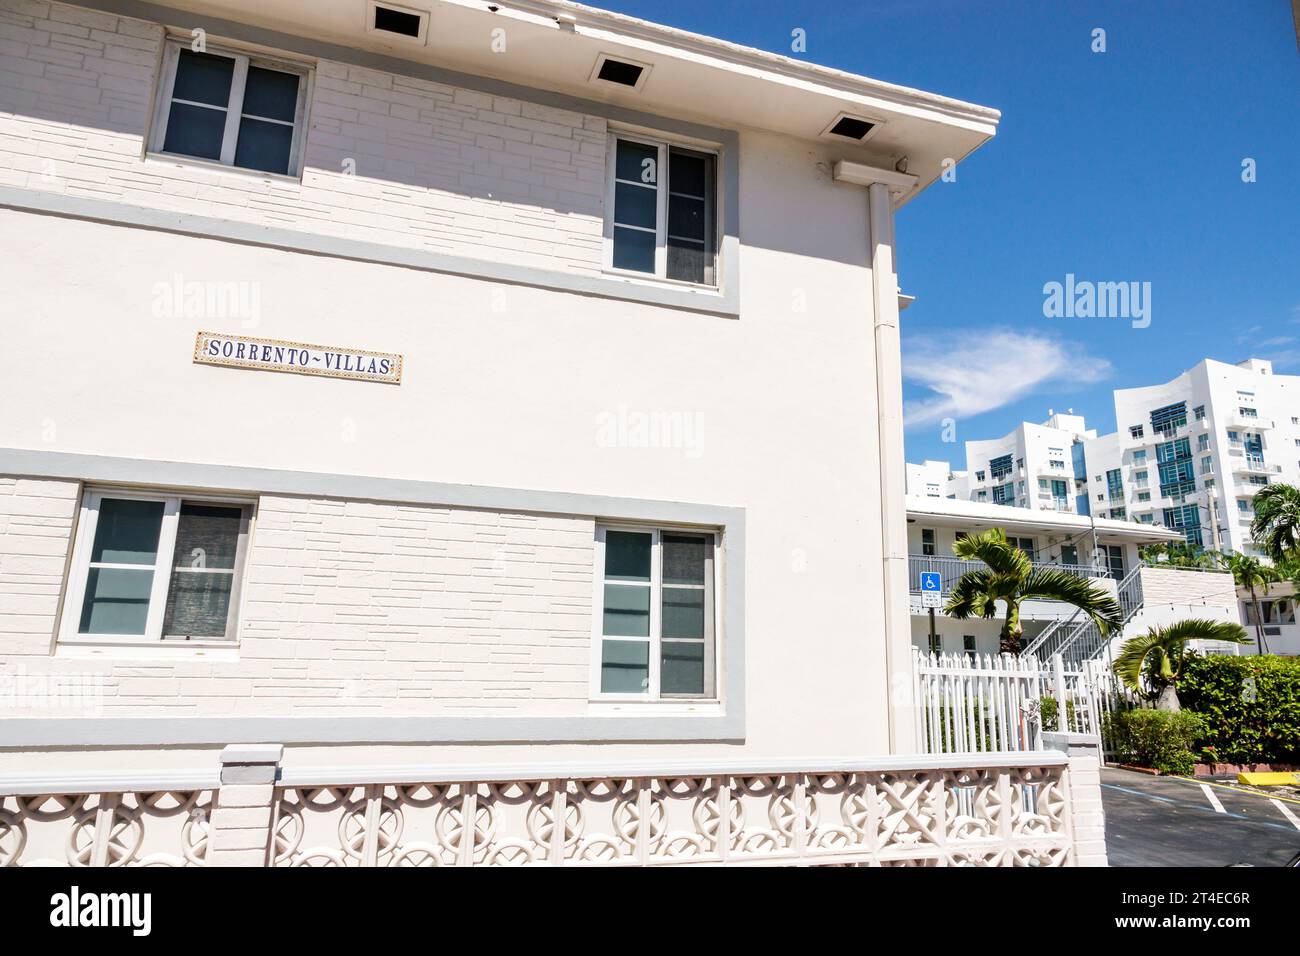 Miami Beach Florida, Außenfassade, Gebäude Vordereingang Wohnungen, North Beach, Sorrento Villas Schild, Miami Modernism MIMO Stil Architektur, Hotels Mo Stockfoto